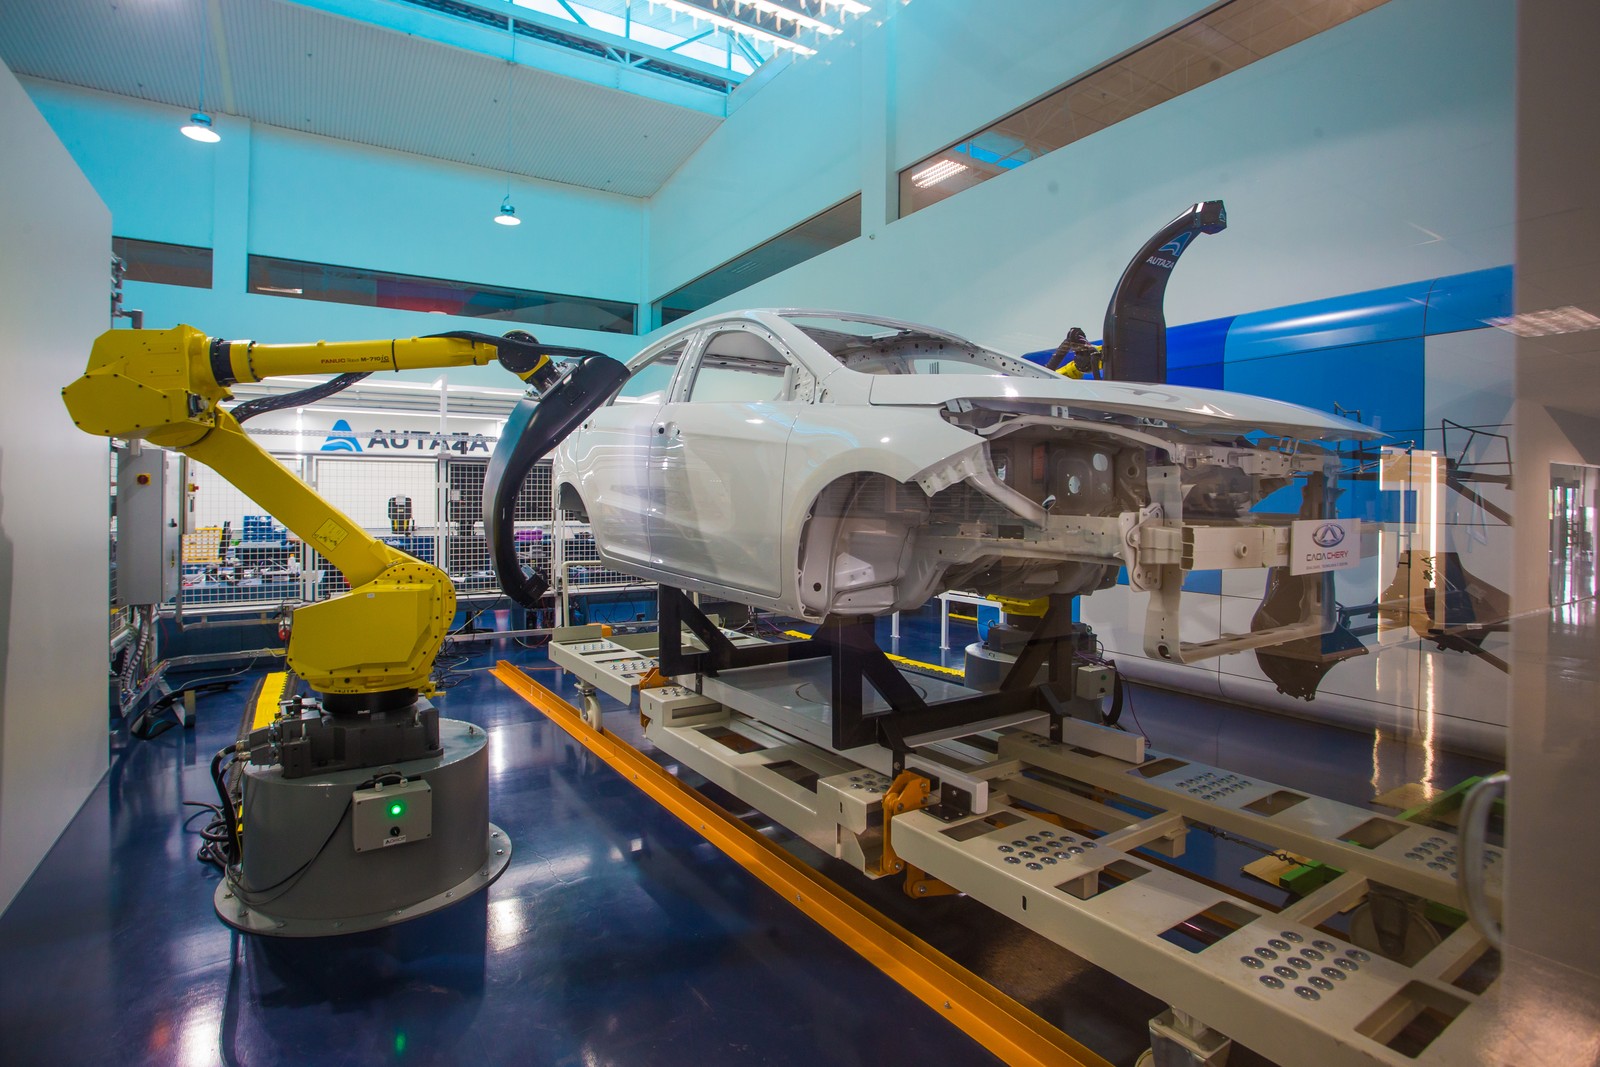 Empresa em São José dos Campos faz escaneamento de carro na linha de produção para detectar pequenos defeitos de fabricação. A inovação já esta sendo testada pela GM nos EUA — Foto: Edilson Dantas / Agência O Globo